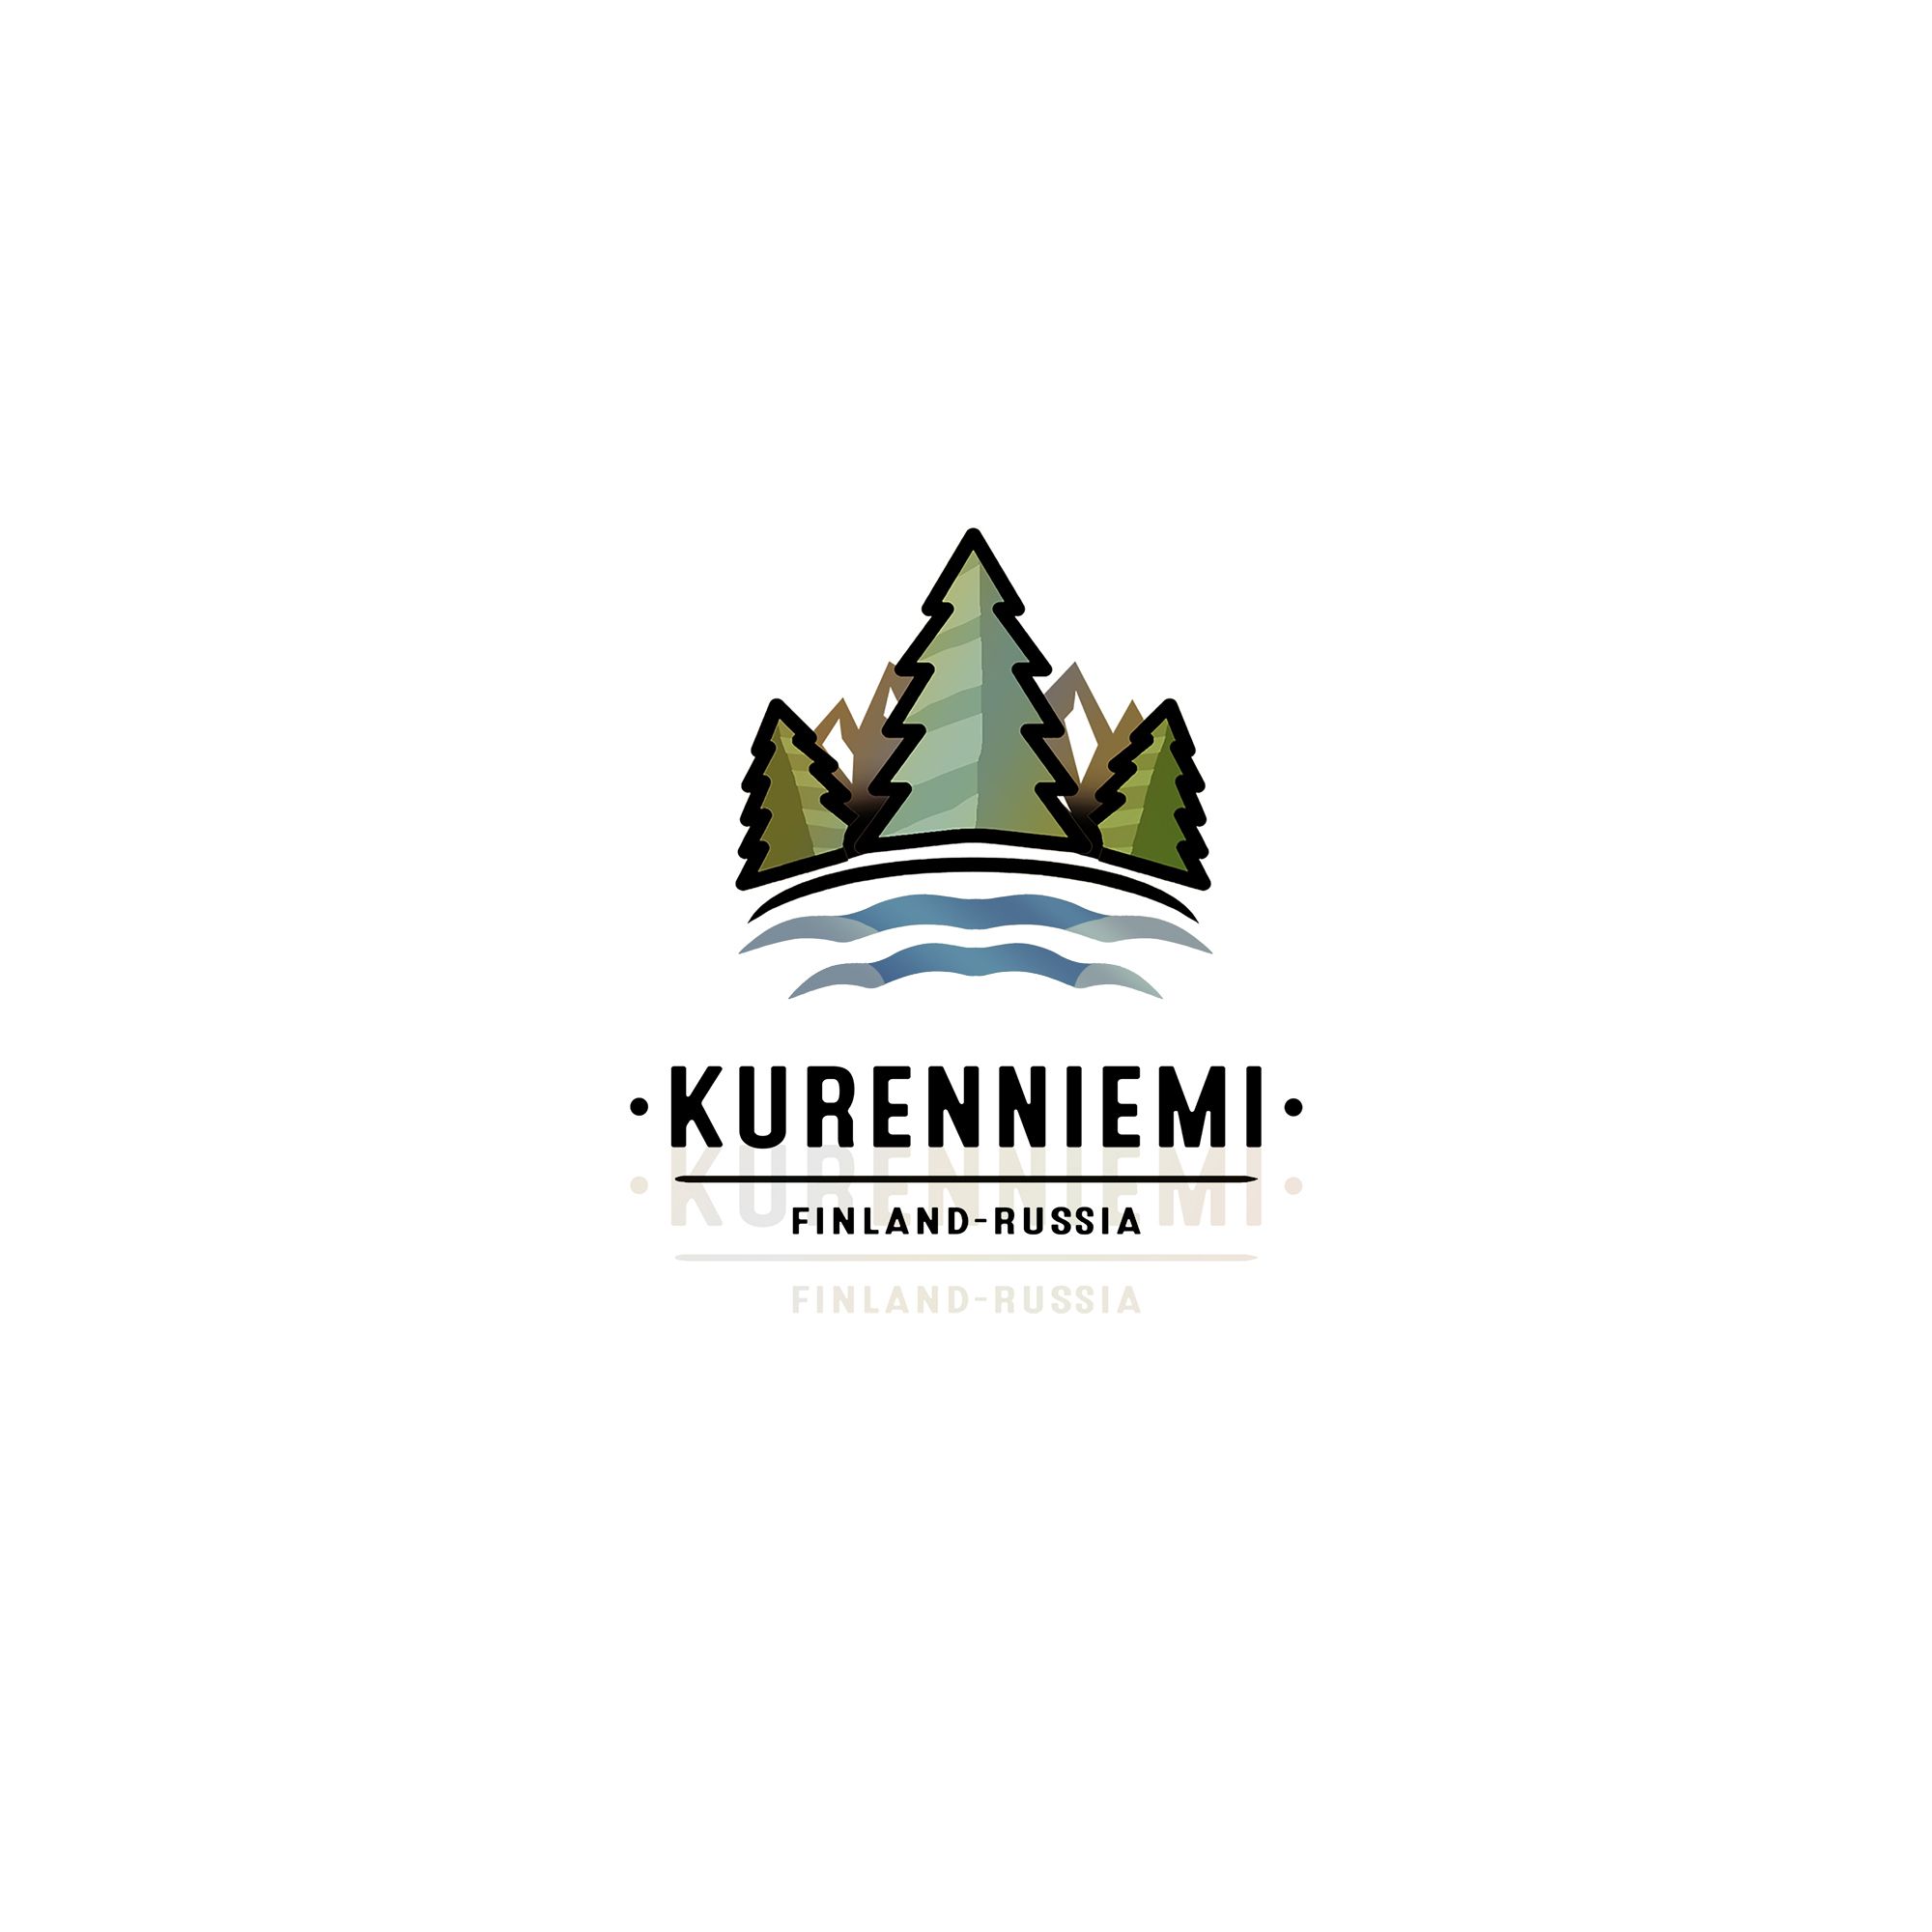 Логотип для Kurenniemi, FinAgRu-nat, Finland-Russia - дизайнер talitattooer